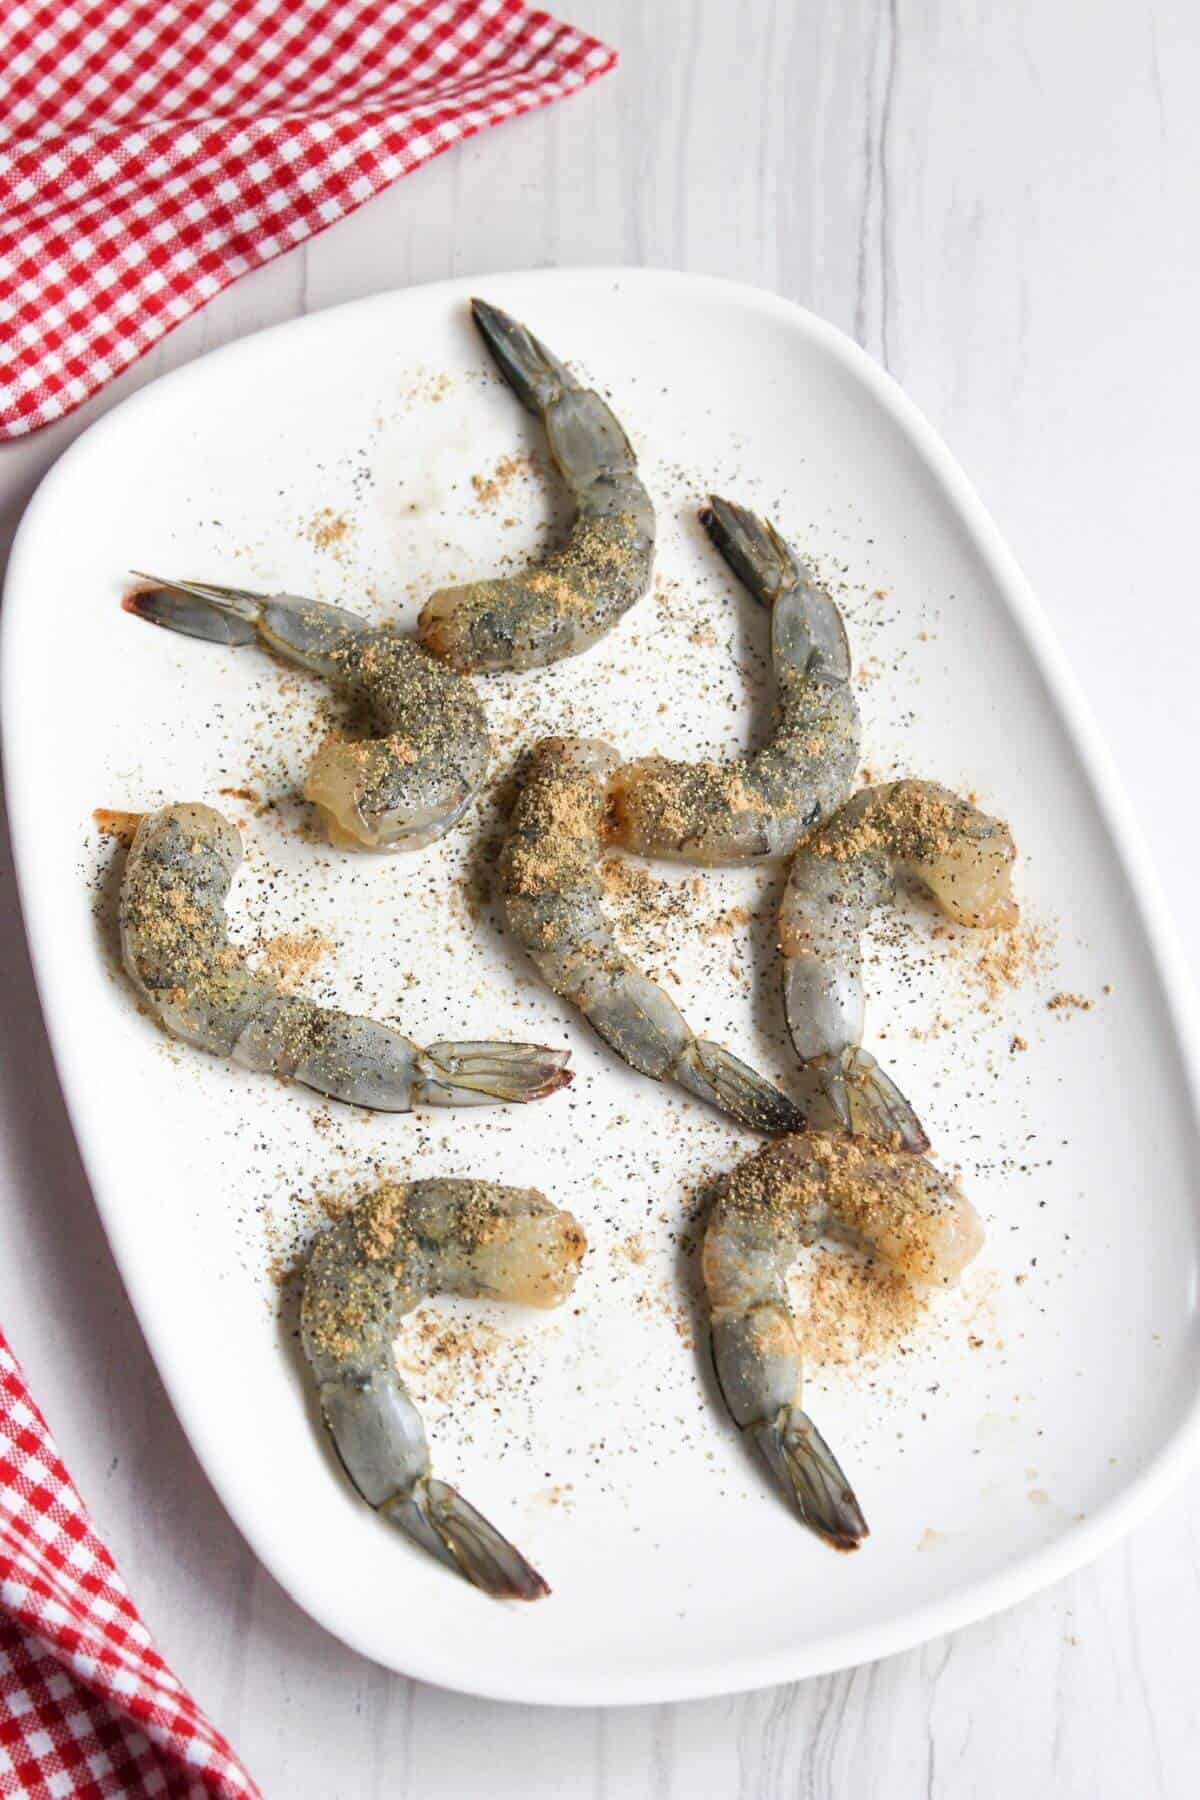 Seasoned shrimp on platter.